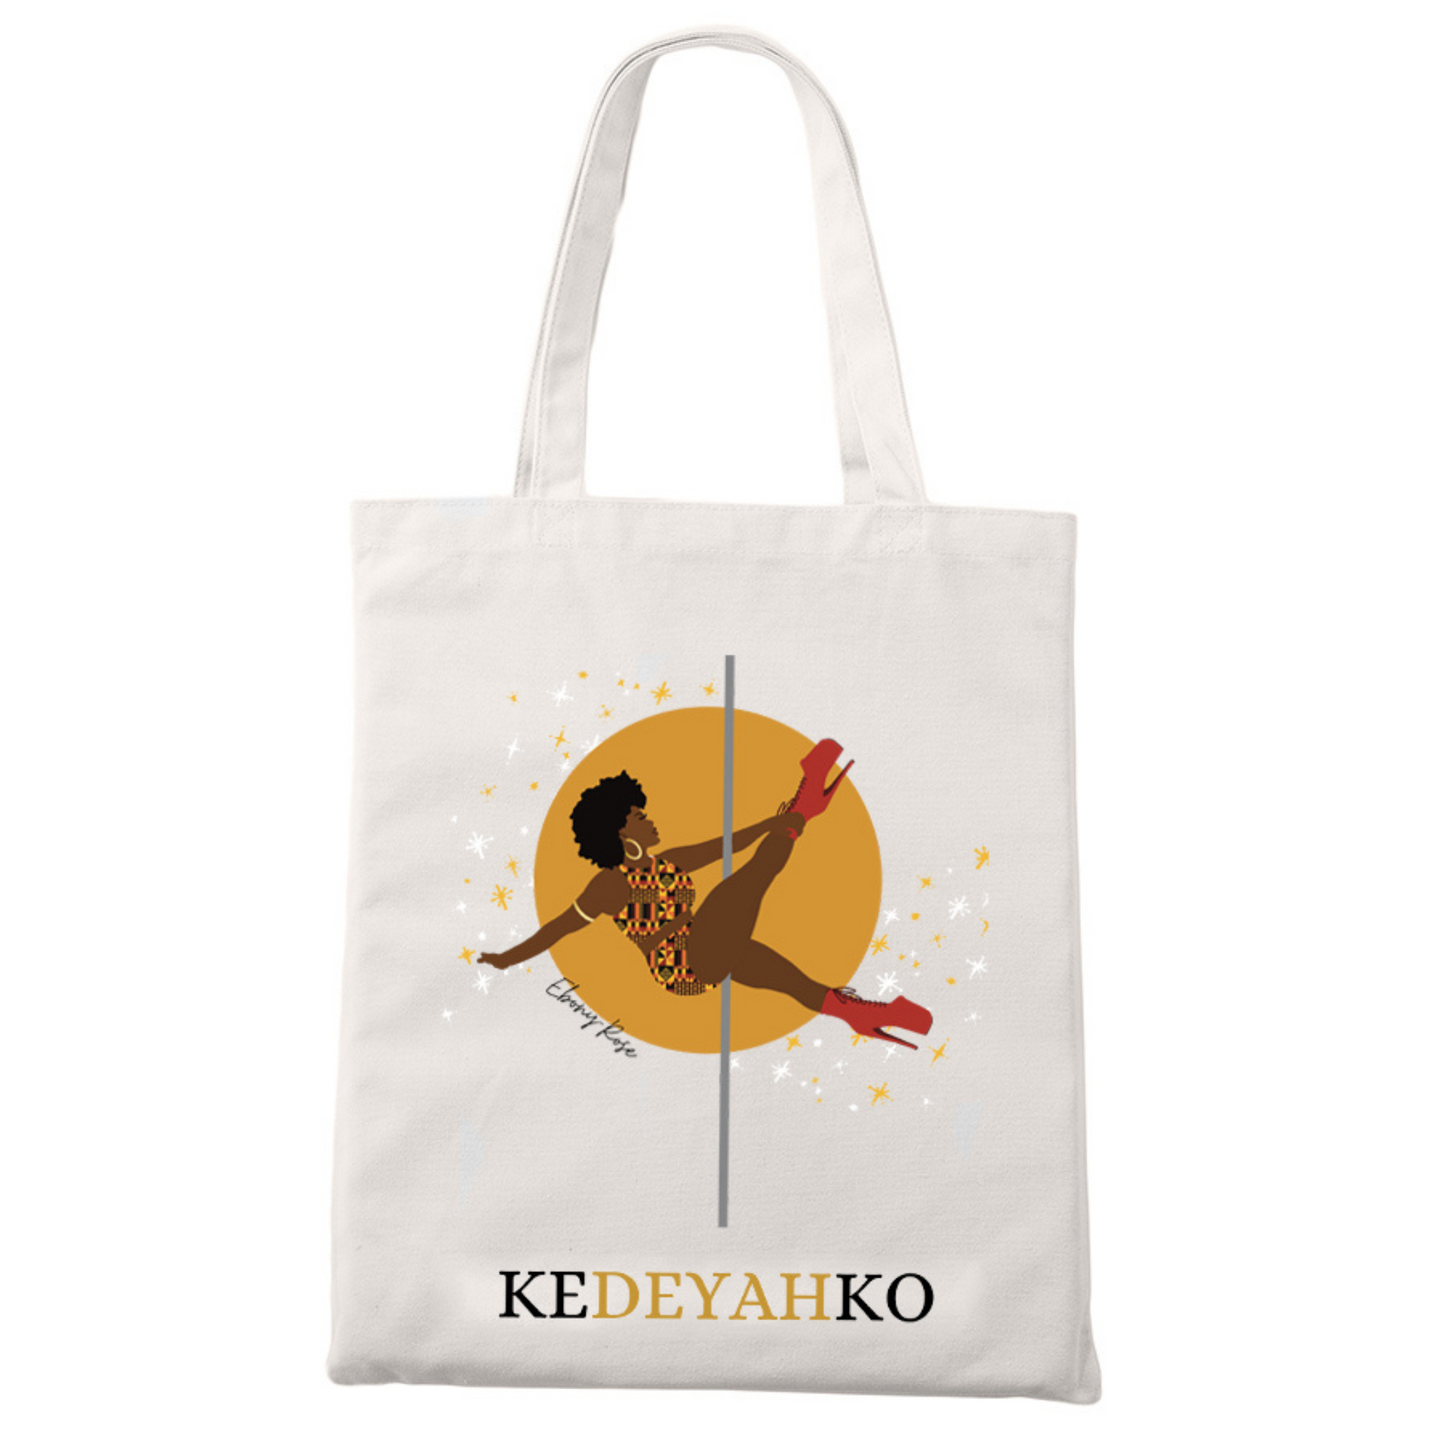 Personalised  Kedeyahko Tote bag